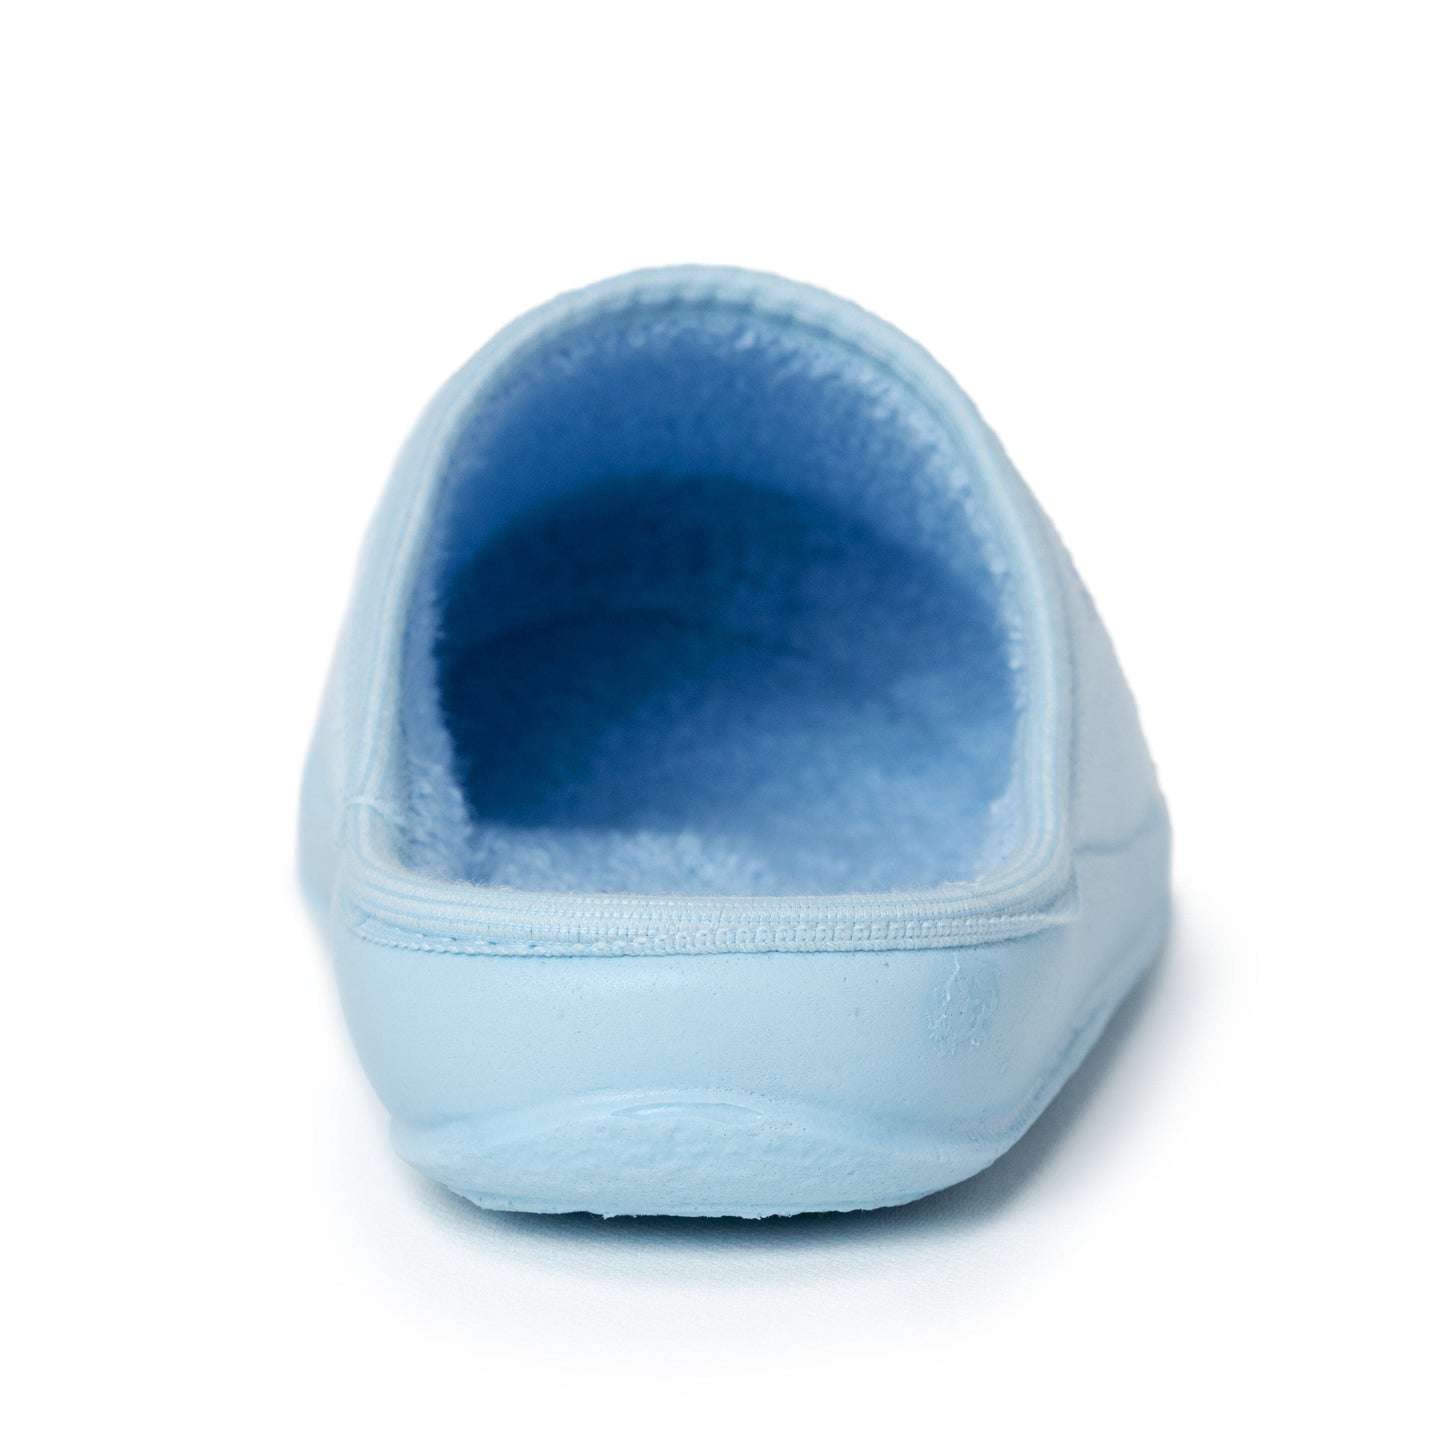 DRLUIGI MEDICAL FOOTWEAR FOR WOMEN PU-01-01-TF - BABY BLUE